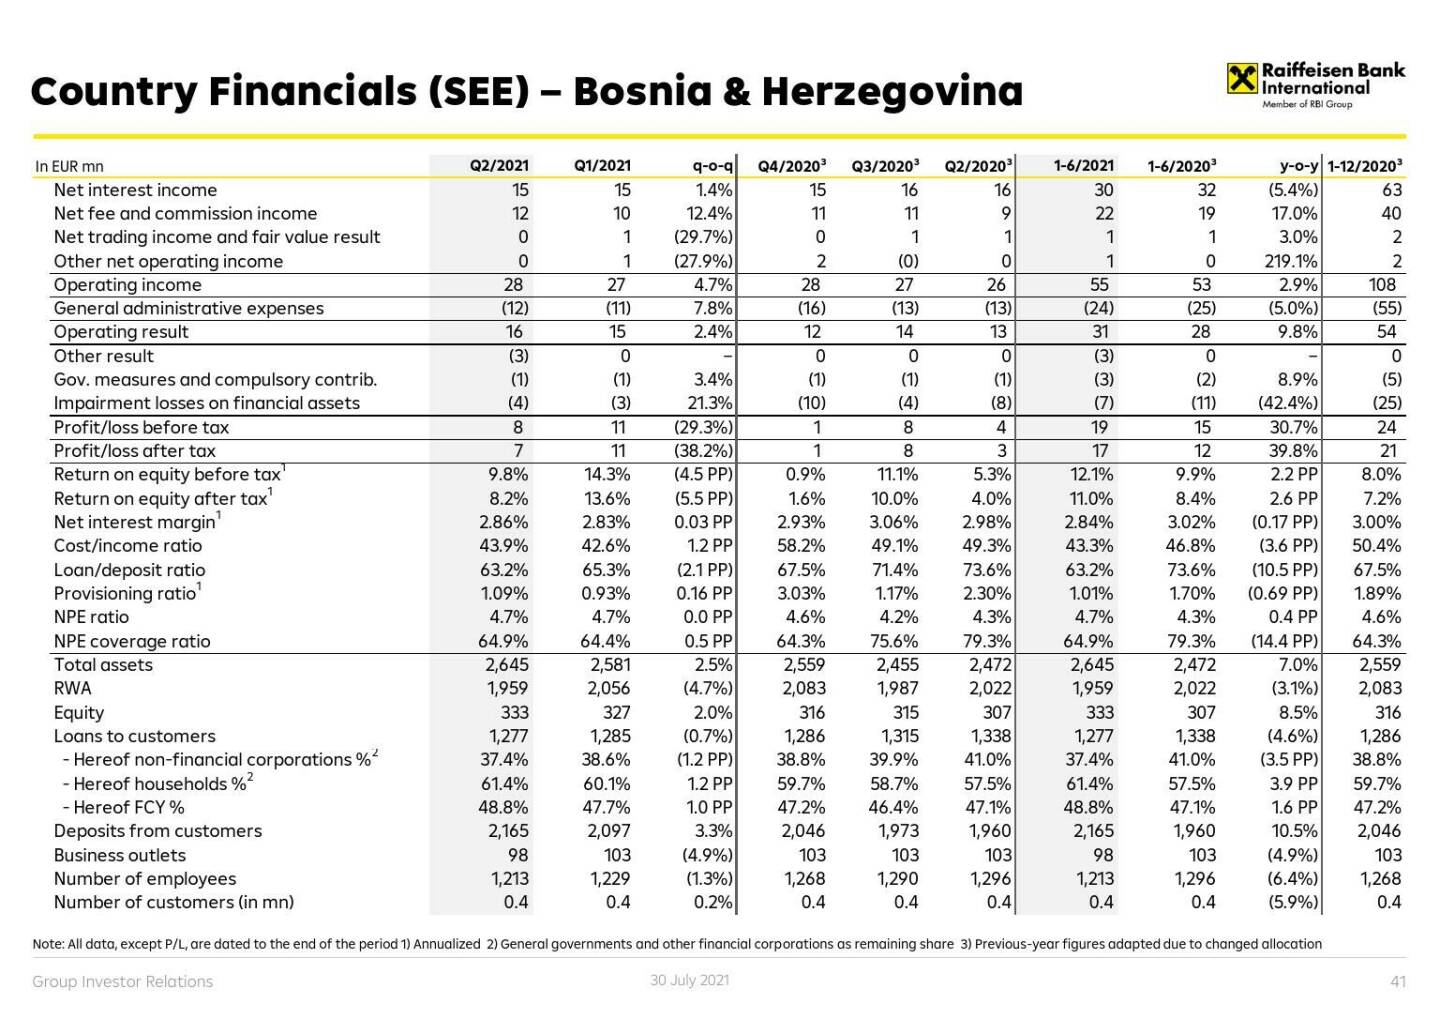 RBI - Country financials (CE) - Bosnia & Herzegovina